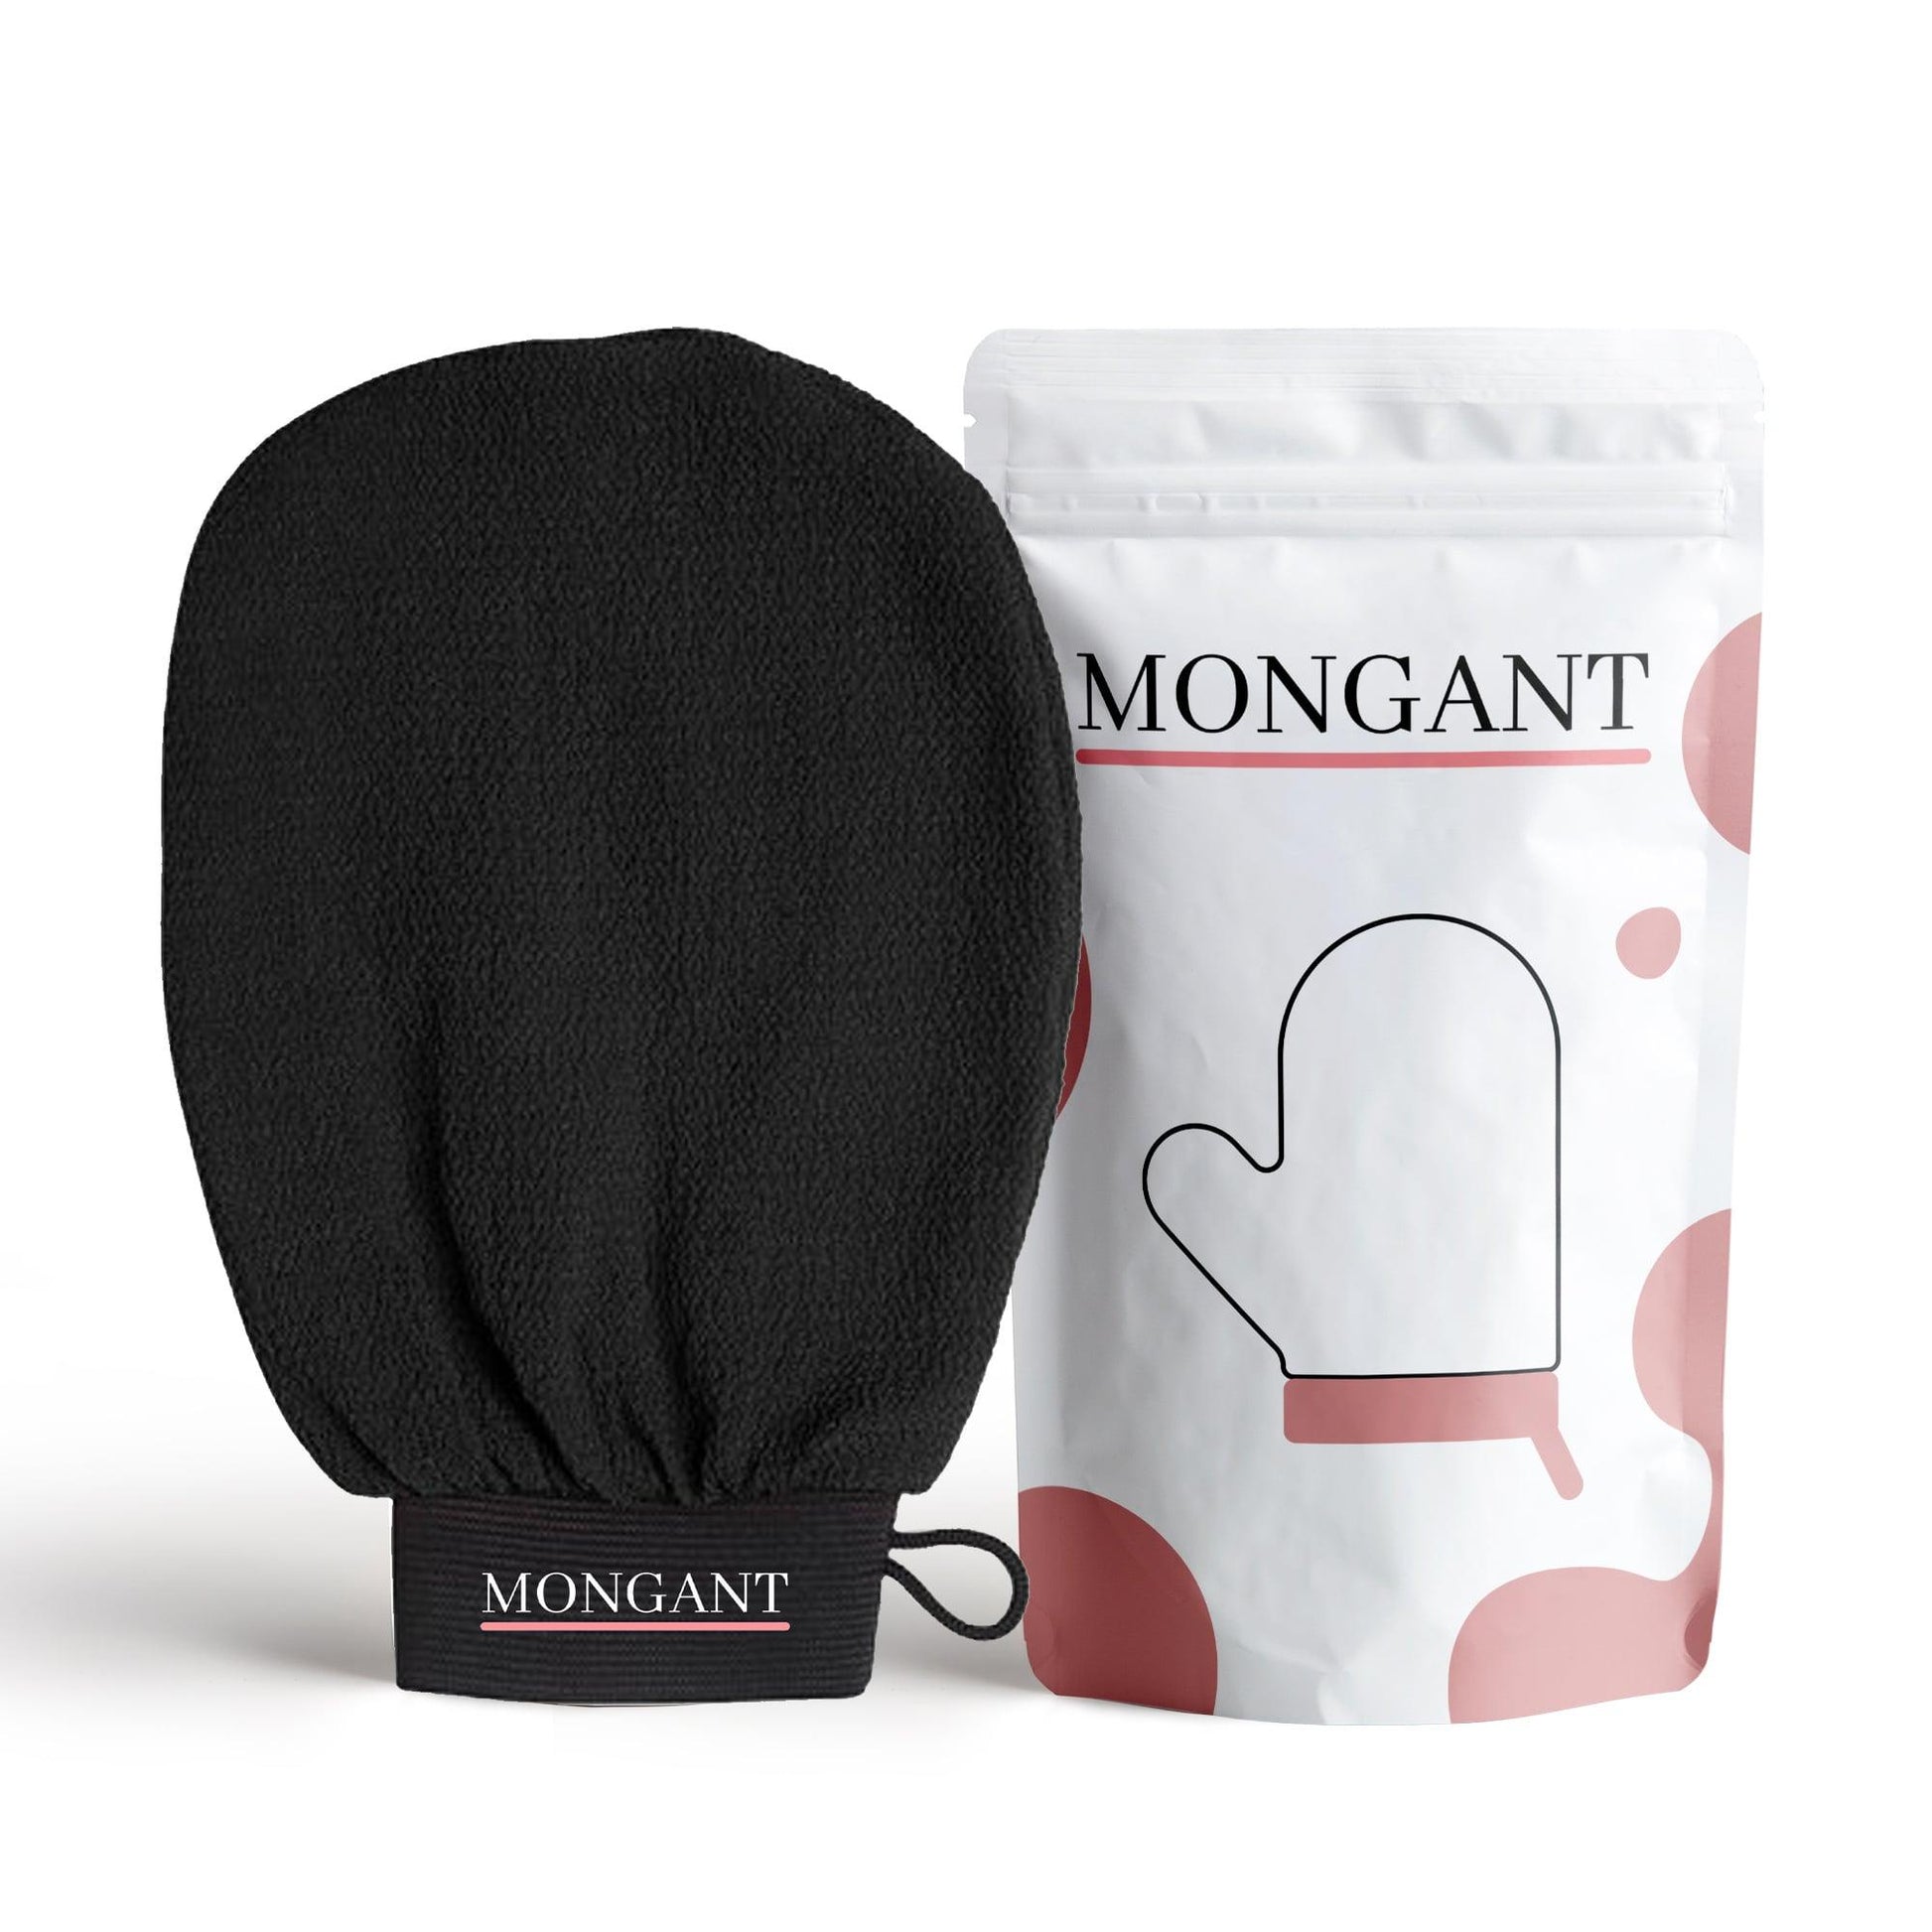 Free Exfoliating Glove - Mongant